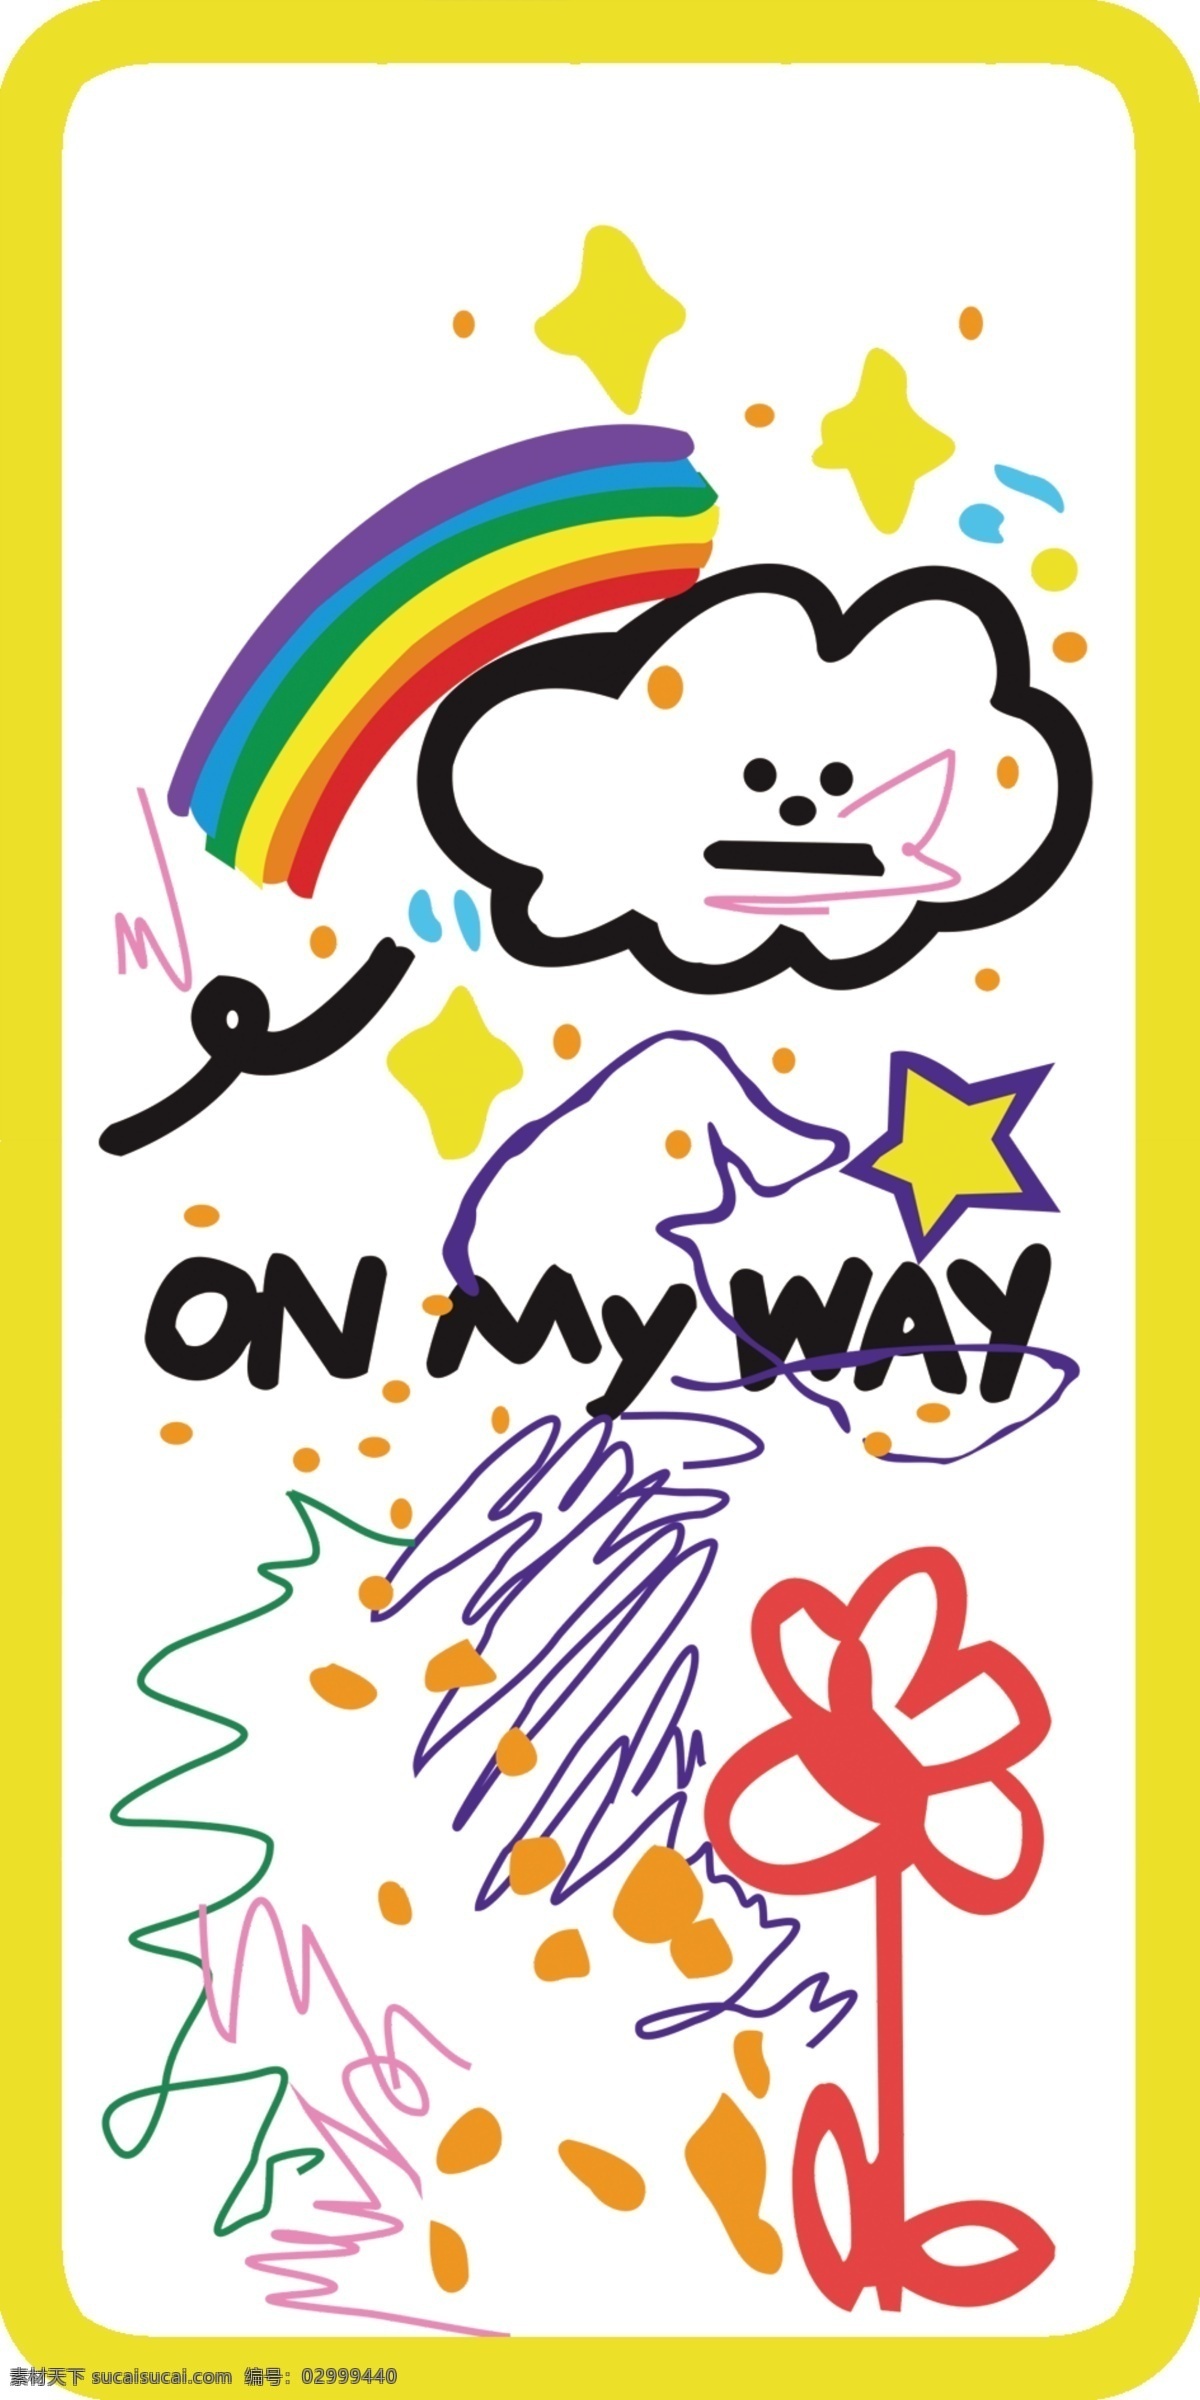 手机壳图案 可爱 简单 卡通 彩虹 文化艺术